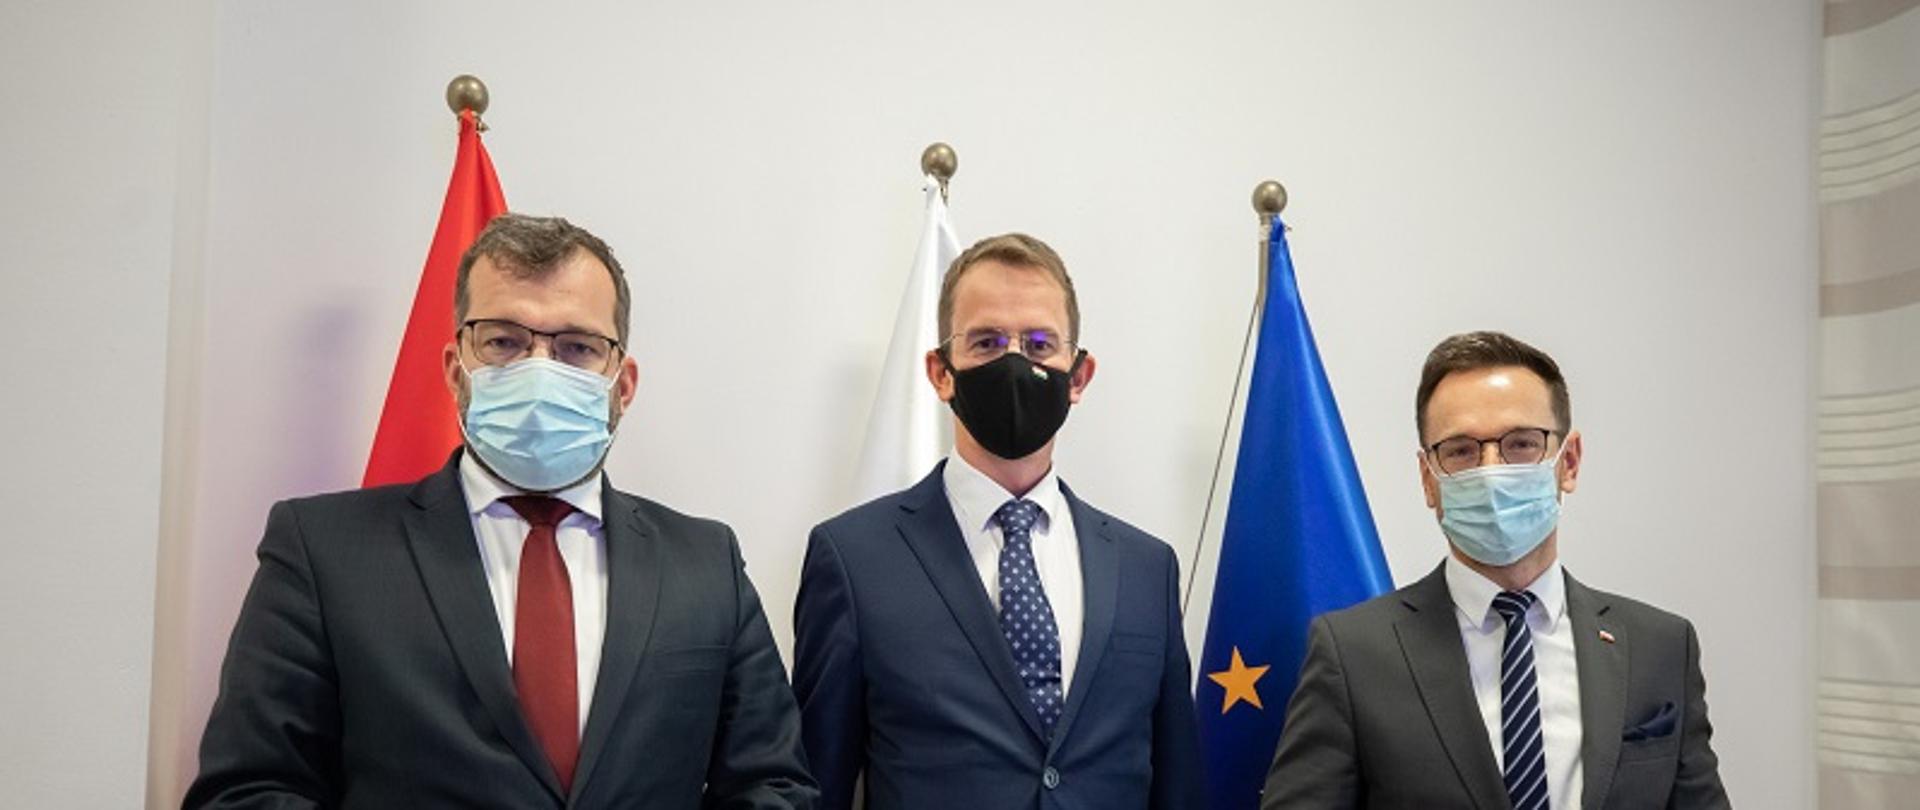 Od lewej minister Puda, w środku wiceminister z Węgier, po prawej wiceminister Buda. Panowie stoją na tle flag Polski, Węgier i Unii Europejskiej